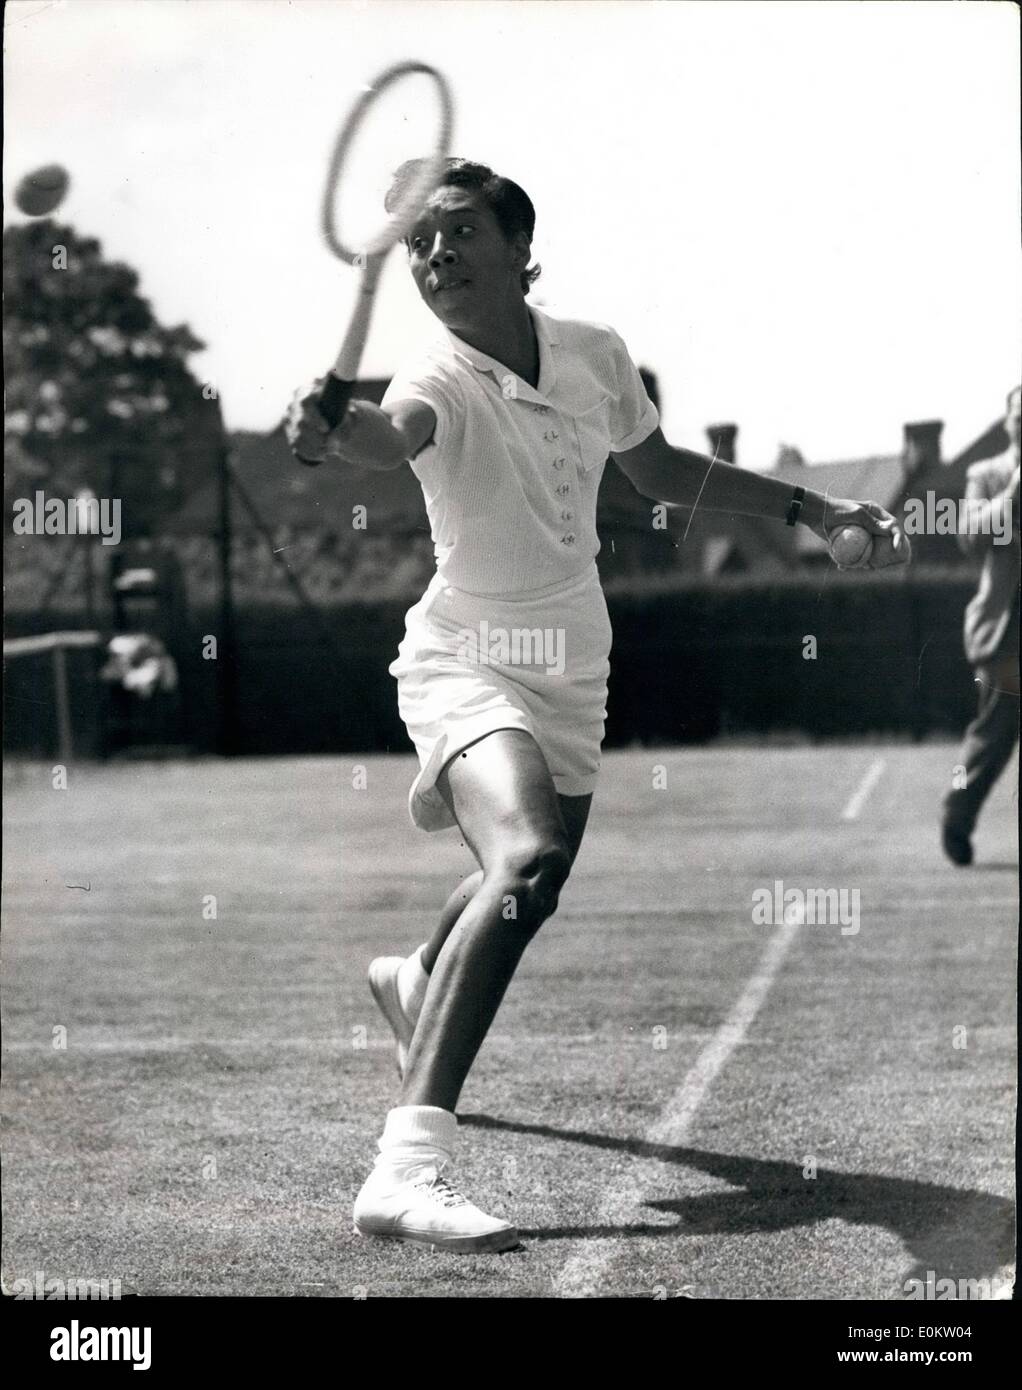 06 juin 1951 - Championnats de Tennis à Beckenham Althea Gibson, qui sera probablement l'un des sensations à Wimbledon. Elle a été la première fille de couleur à jouer à Forest Hills. Photo montre Mlle Althea Gibson, le joueur de couleur, en action contre Mlle Carlisle, à Beckenham aujourd'hui. Banque D'Images